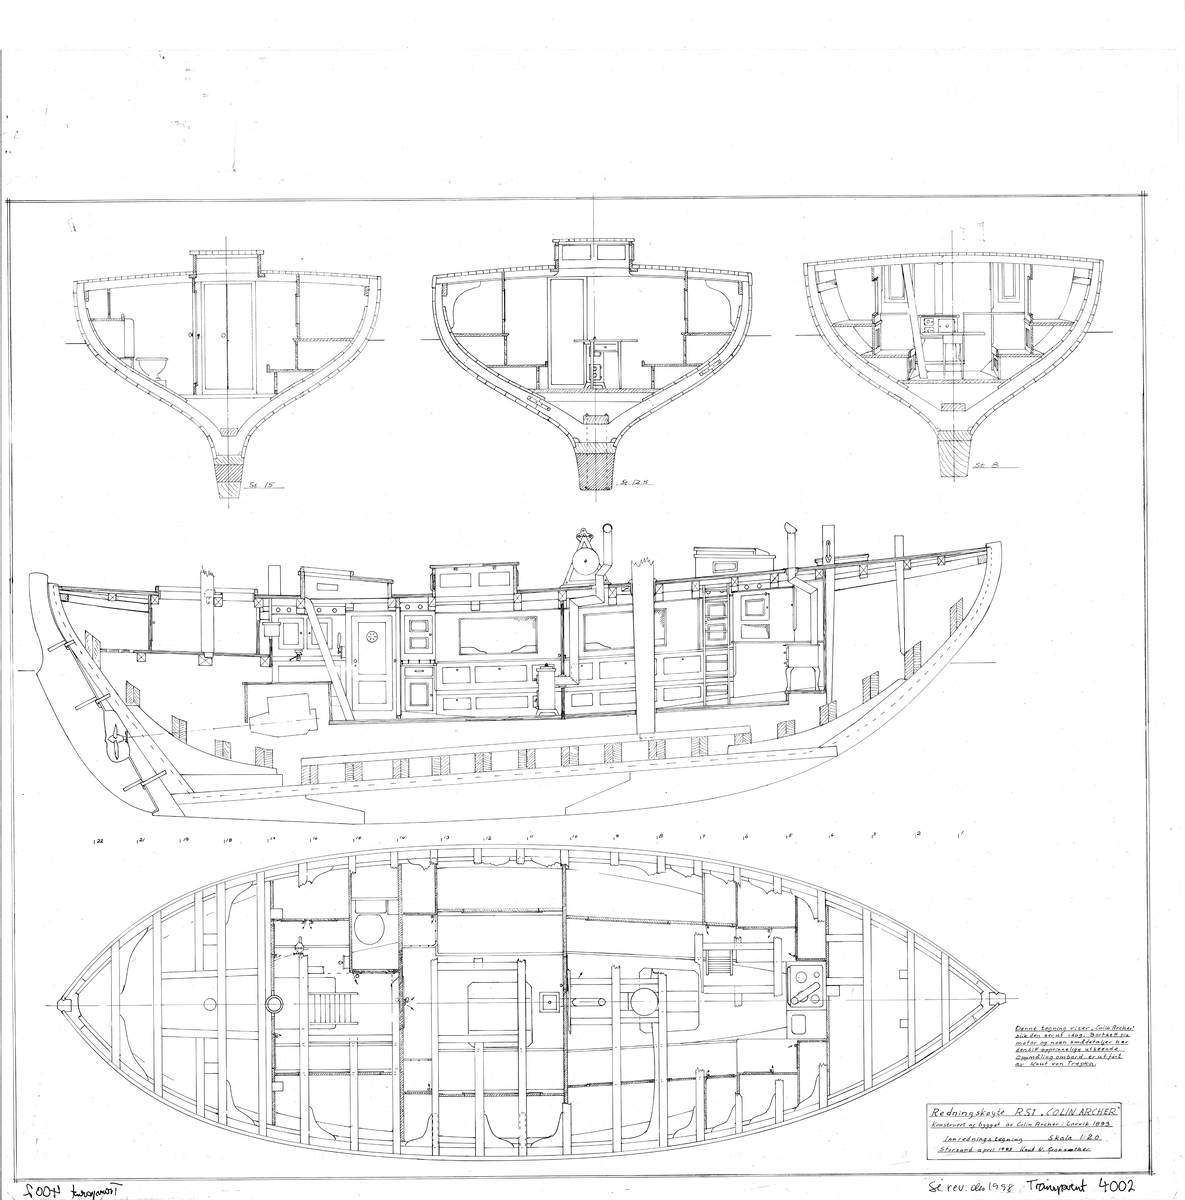 Tegning av generalarrangement til redningsskøyte R/S 1 'Colin Archer'. Båten ble konstruert og bygget av Colin Archer i 1893.